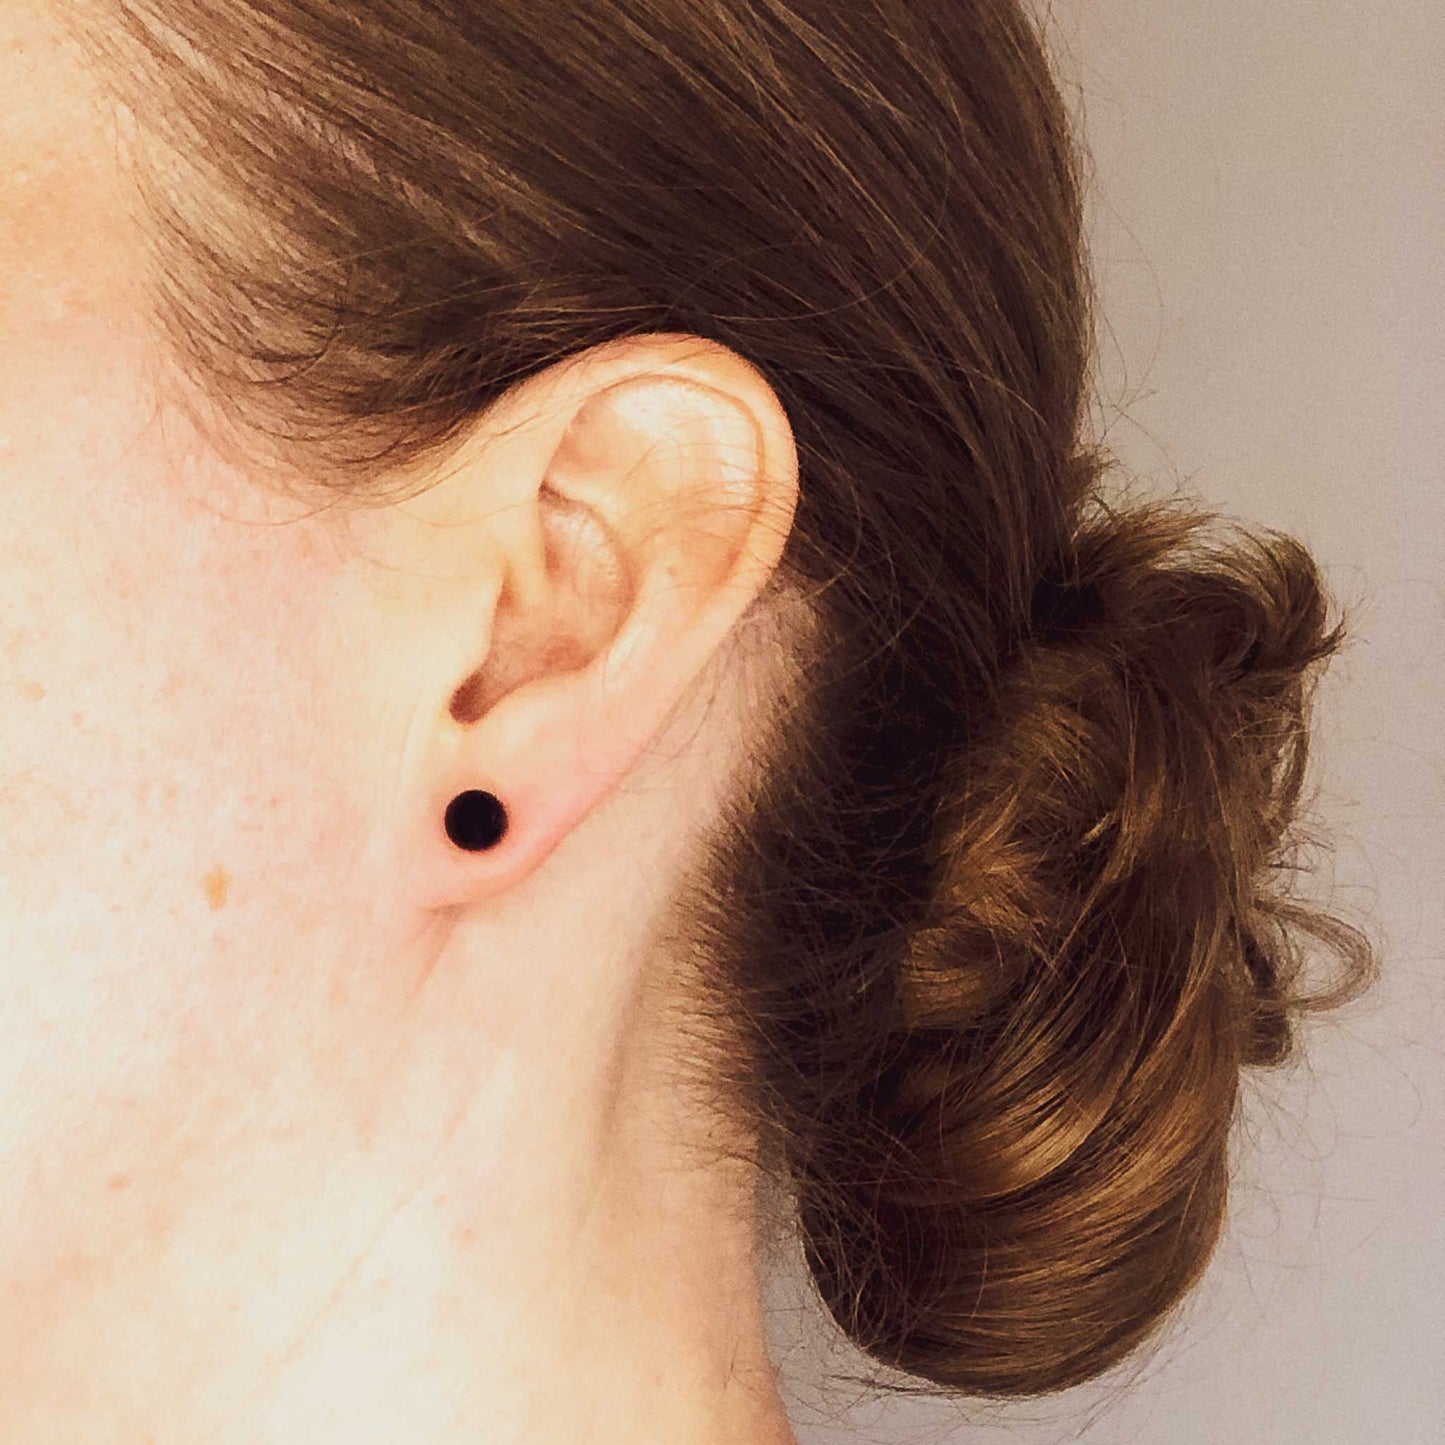 Woman wearing Sodalite stud earrings blue stone in earlobe